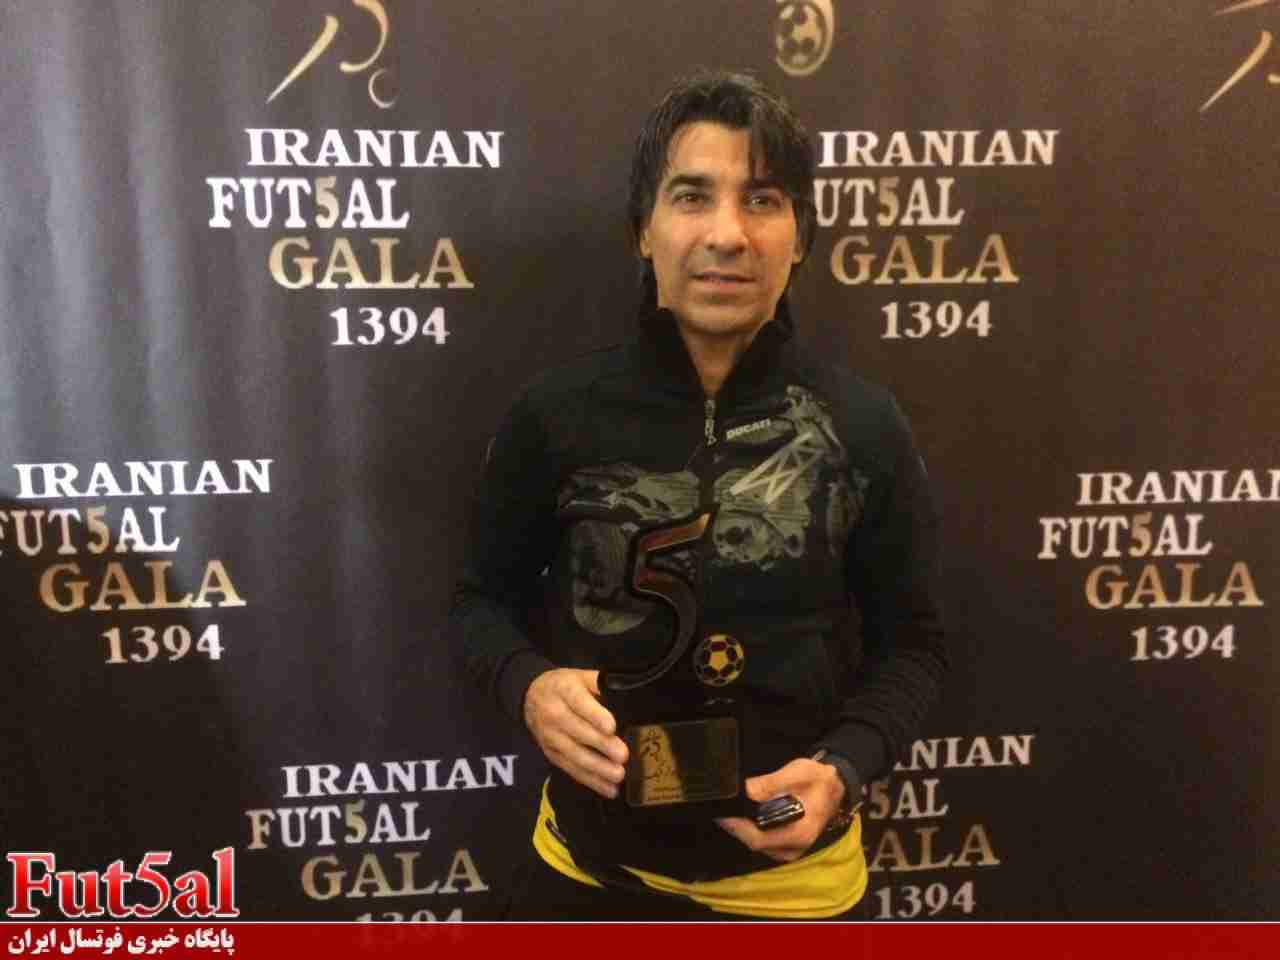 شمسایی:از انتخابم به عنوان بهترین مربی خوشحالم/برای حضور در ازبکستان تردید دارم/تیم ملی می تواند قهرمان شود